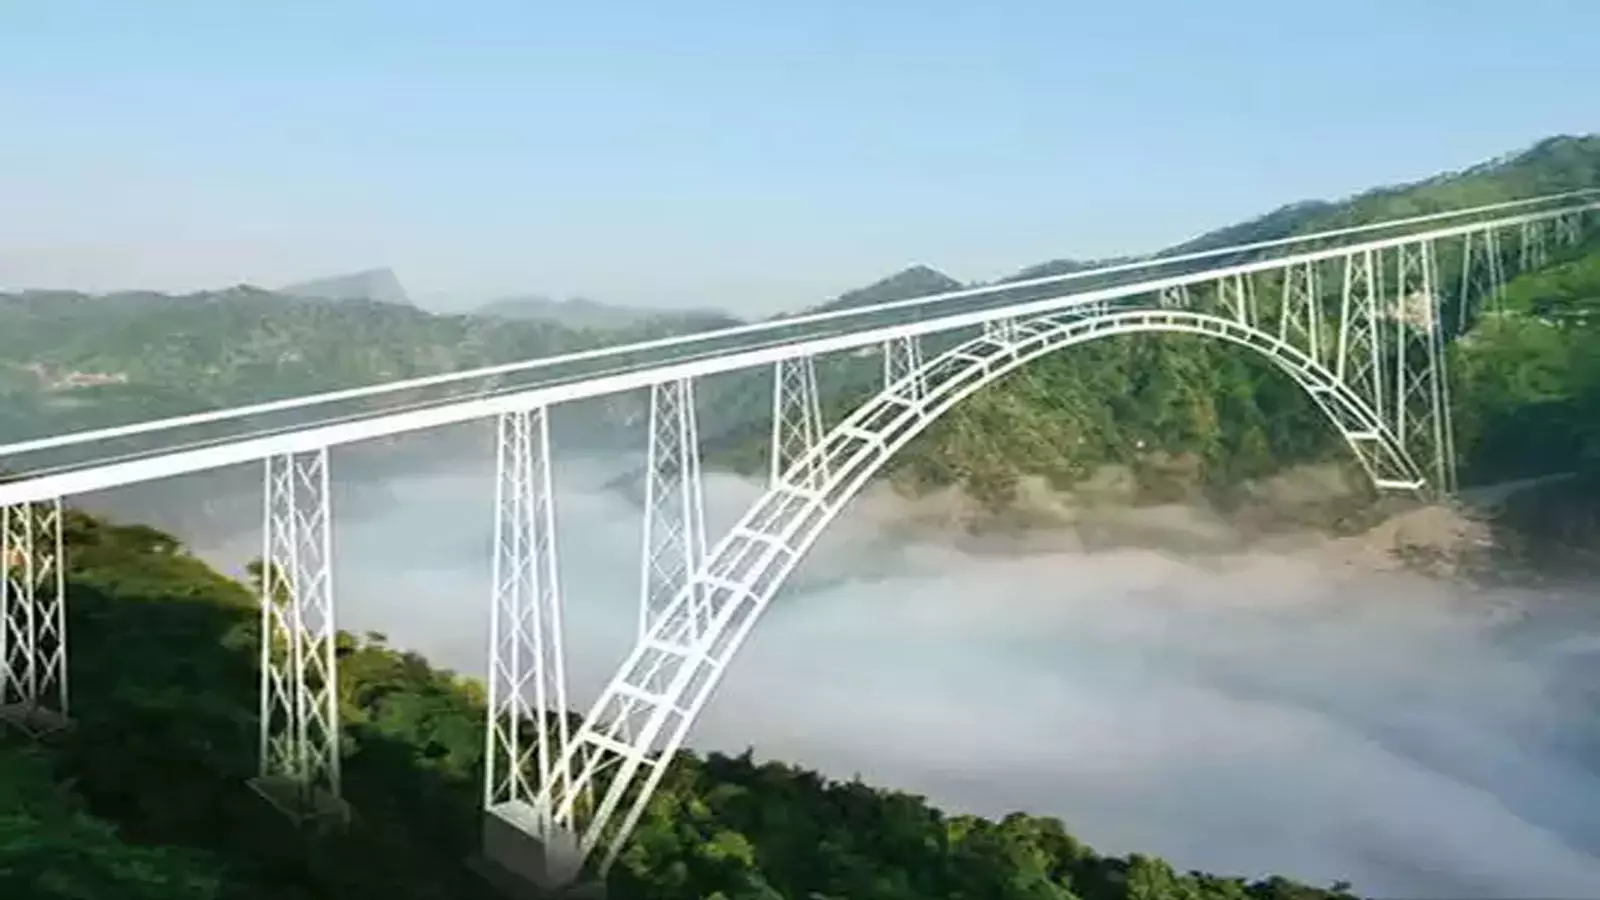 कश्मीर में दुनिया का सबसे ऊंचा रेलवे ब्रिज, देखें खूबसूरत वीडियो